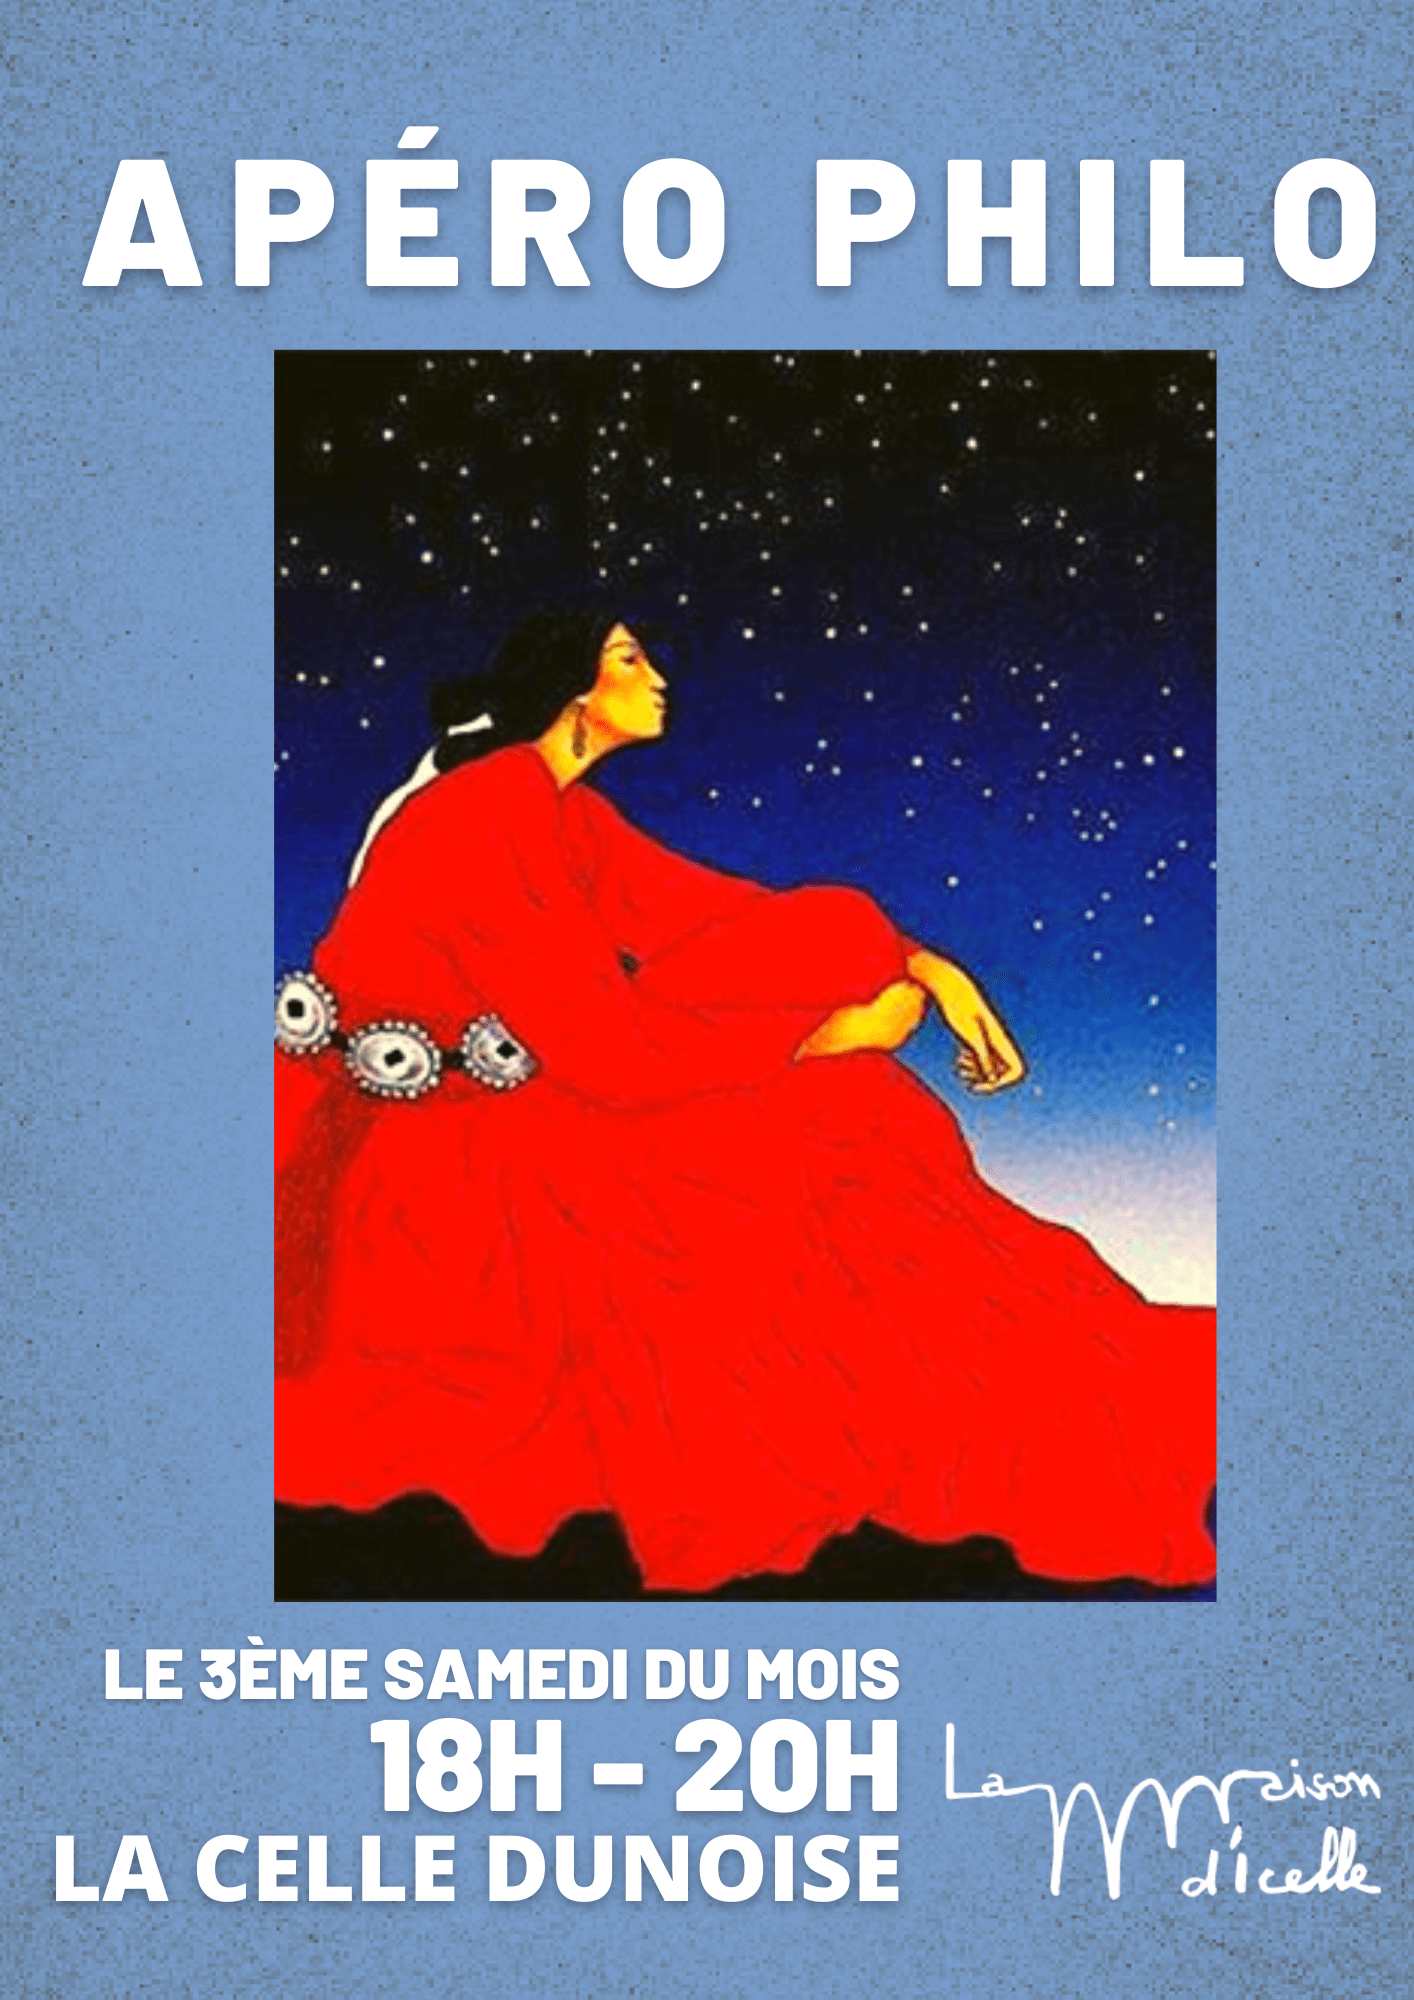 You are currently viewing Sam 20 avril 18h-20h<br>Apéro-philo animé par Sylvie Legeindre